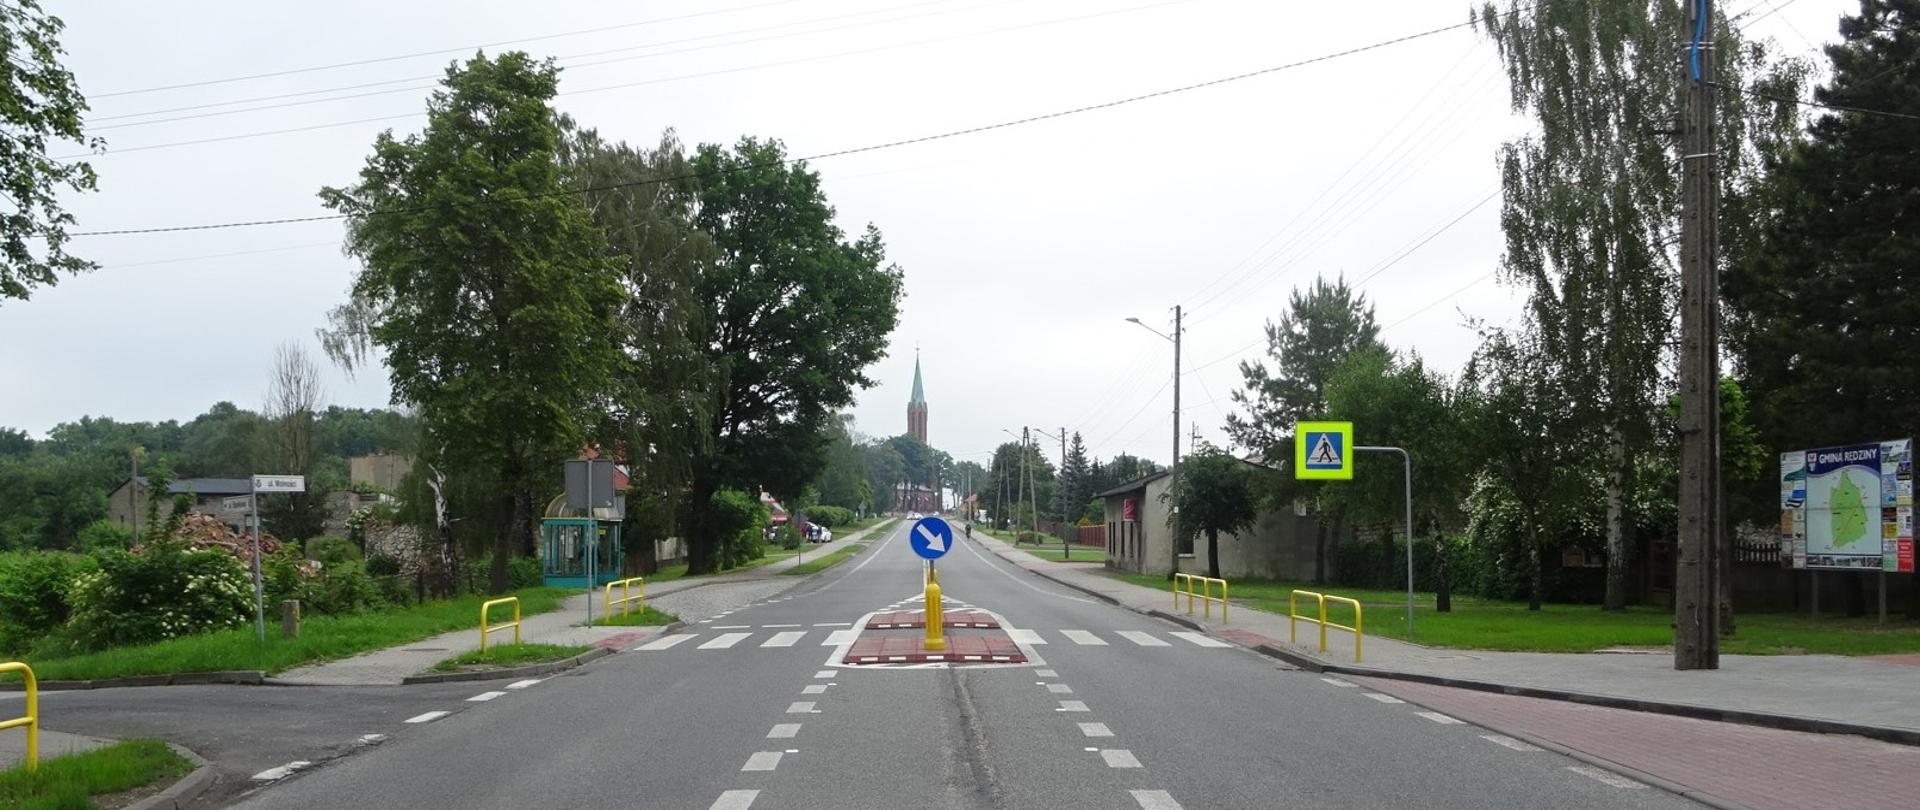 Przejście dla pieszych w ciągu DK91 w miejscowości Rędziny, na zdjęciu znajduje się przejście dla pieszych na drodze jednojezdniowej z azylem, w obrębie przejścia znajdują się przystanki autobusowe, w tle widać kościół